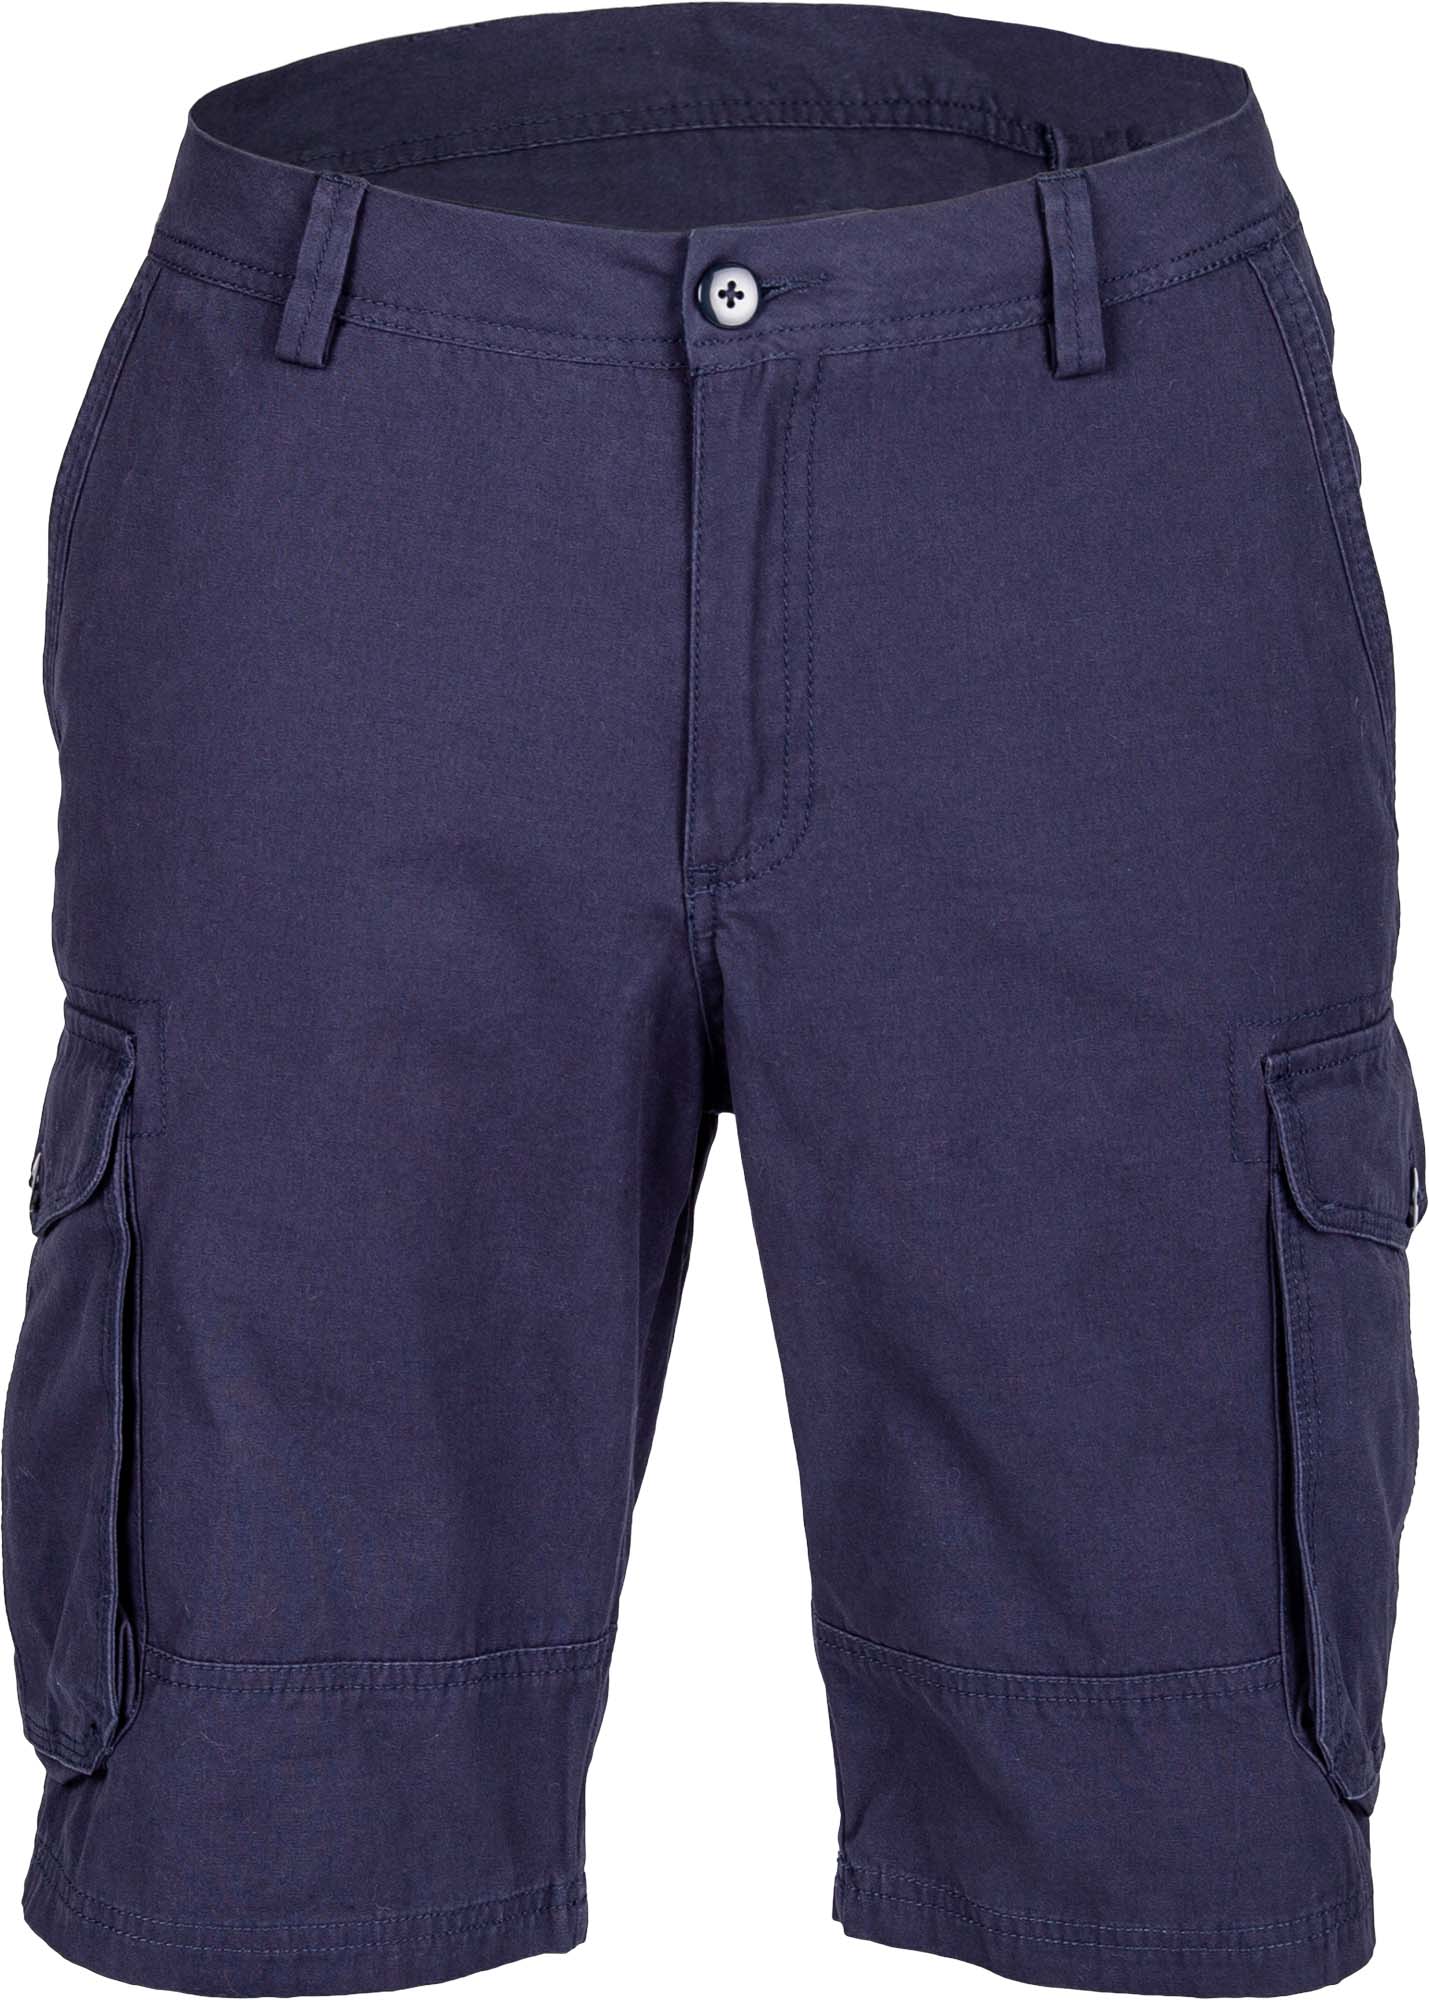 Men’s canvas shorts